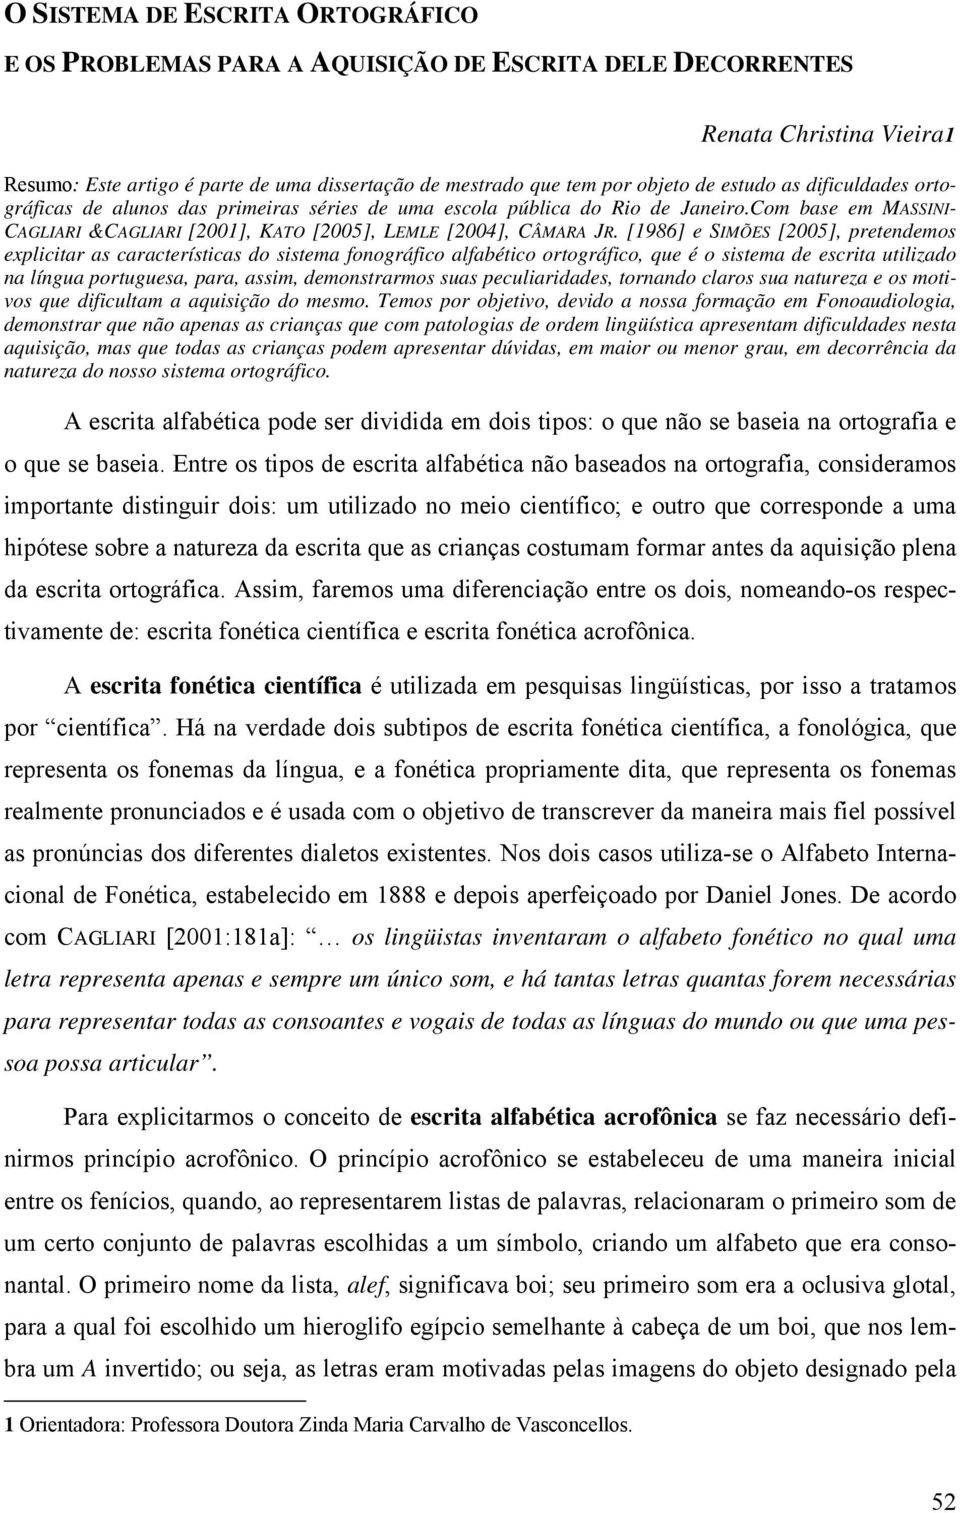 [1986] e SIMÕES [2005], pretendemos explicitar as características do sistema fonográfico alfabético ortográfico, que é o sistema de escrita utilizado na língua portuguesa, para, assim, demonstrarmos